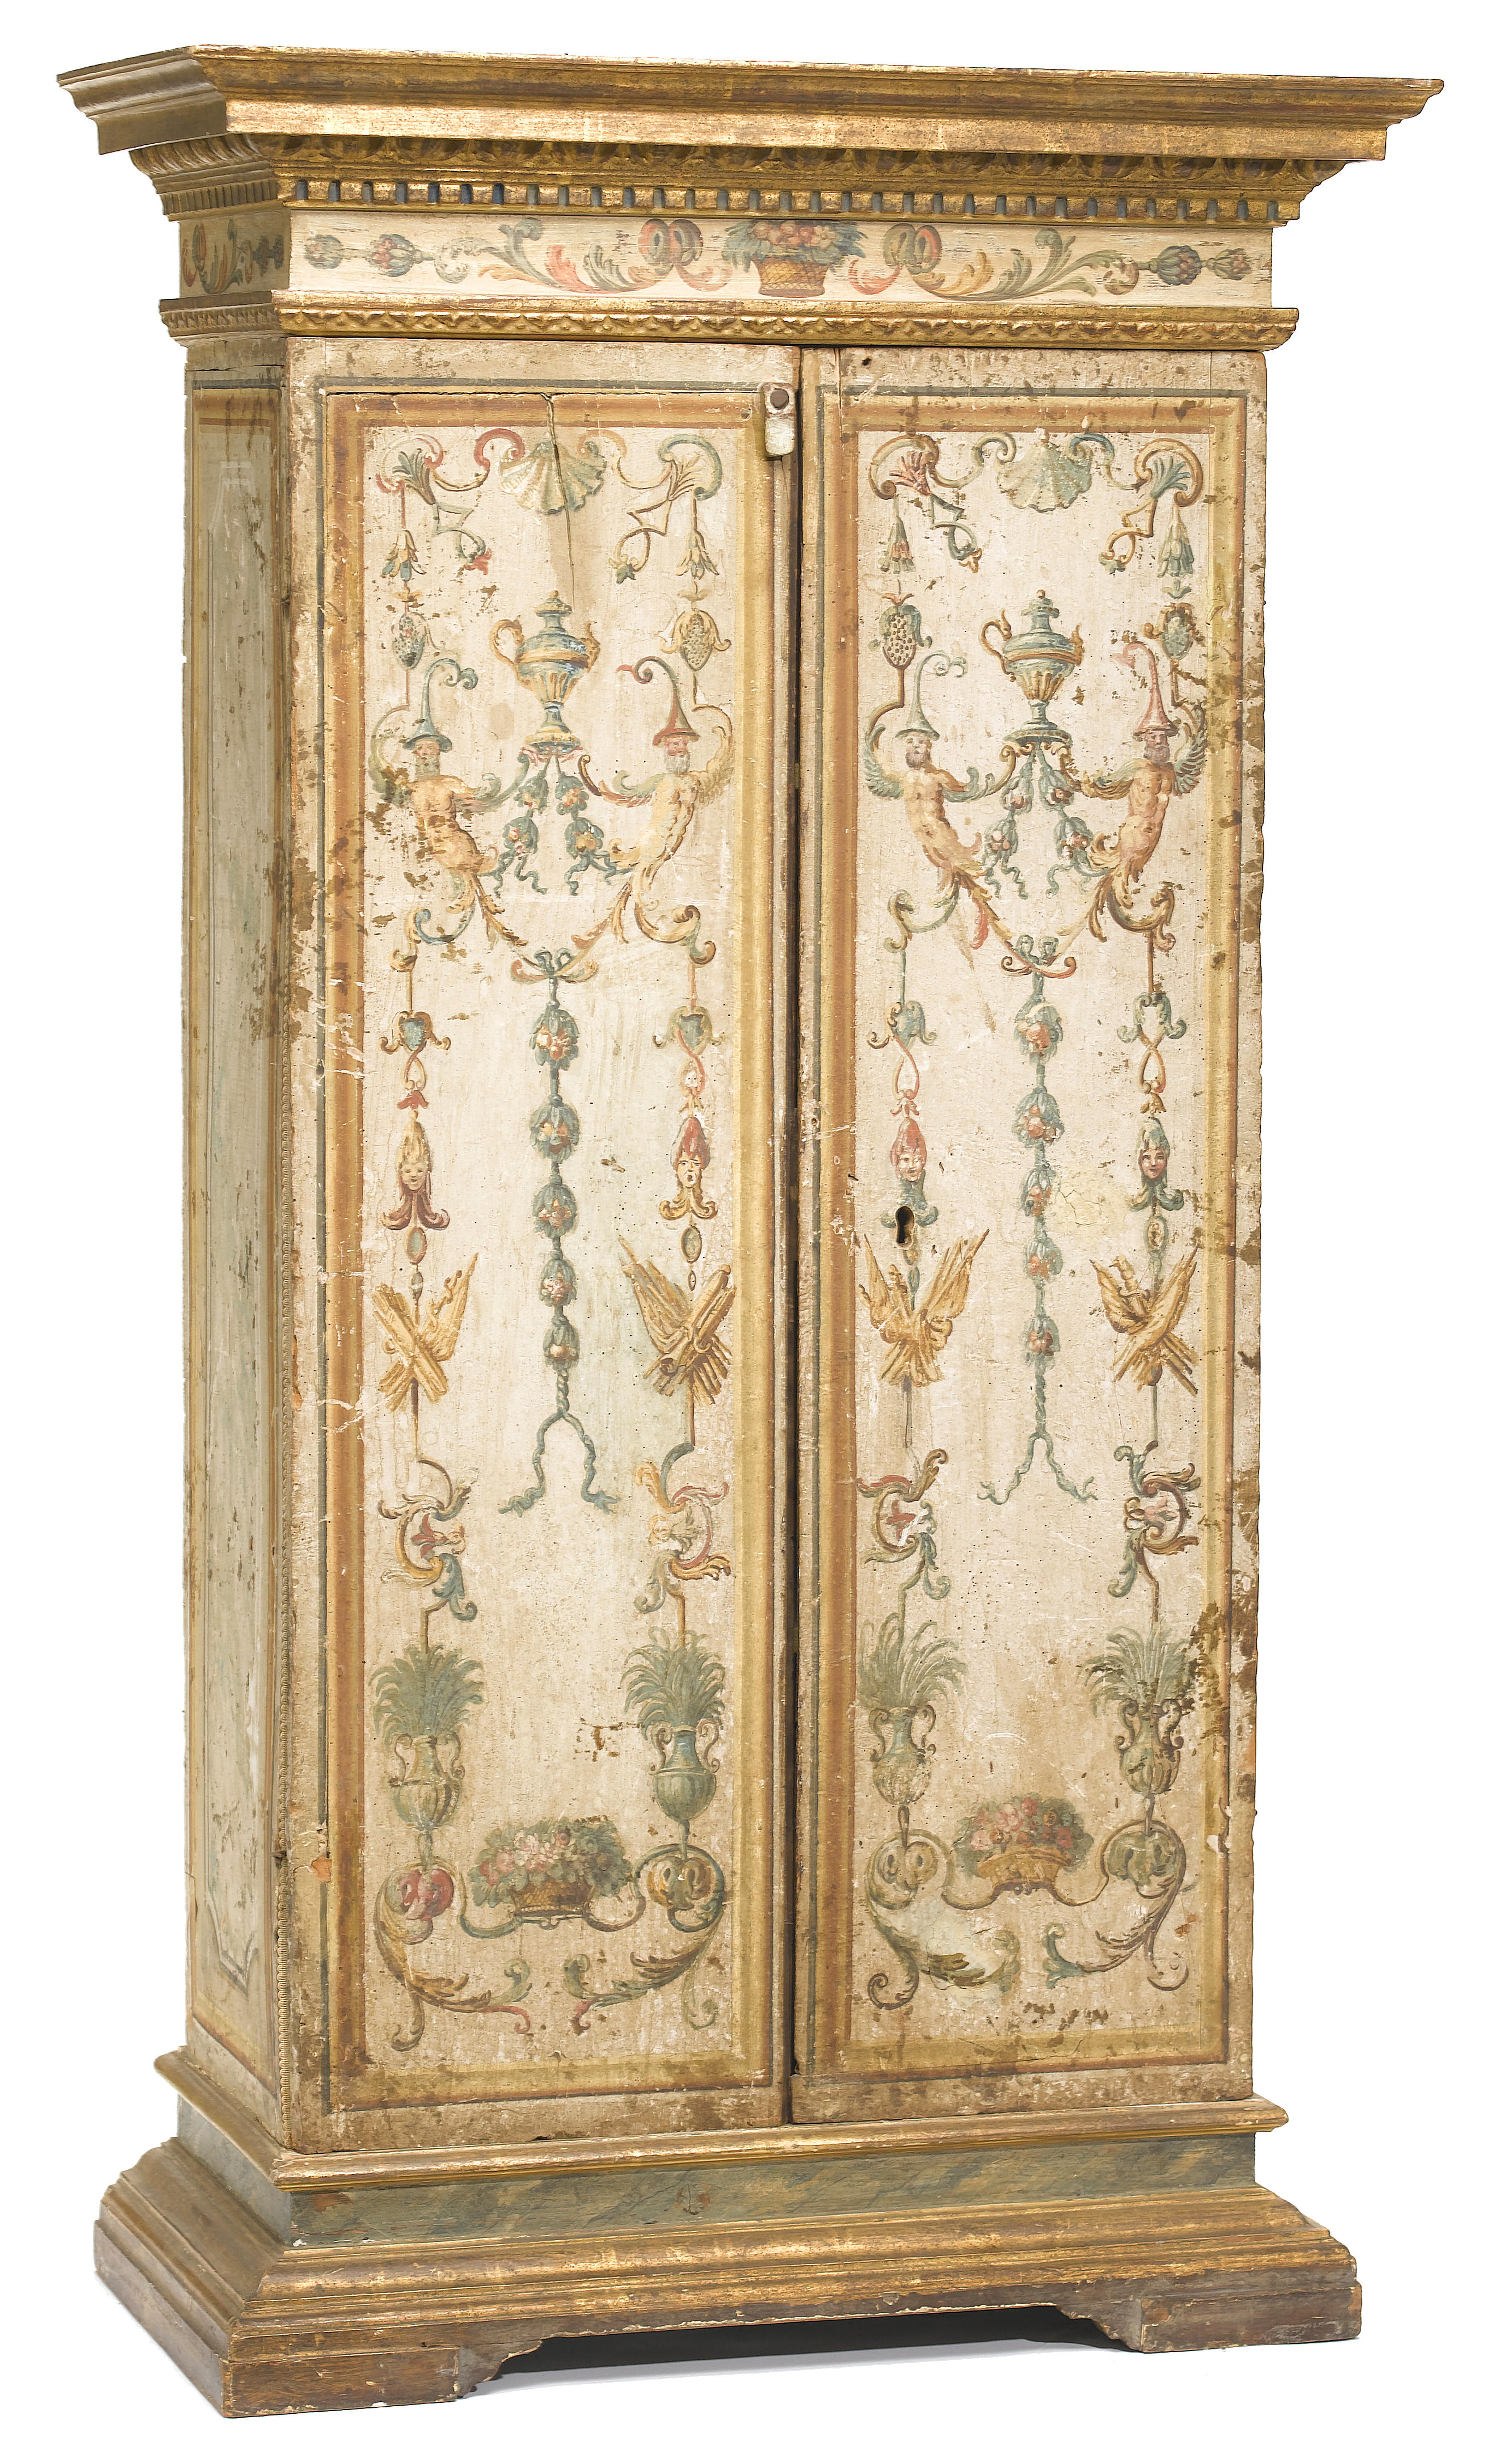 An Italian Baroque parcel gilt